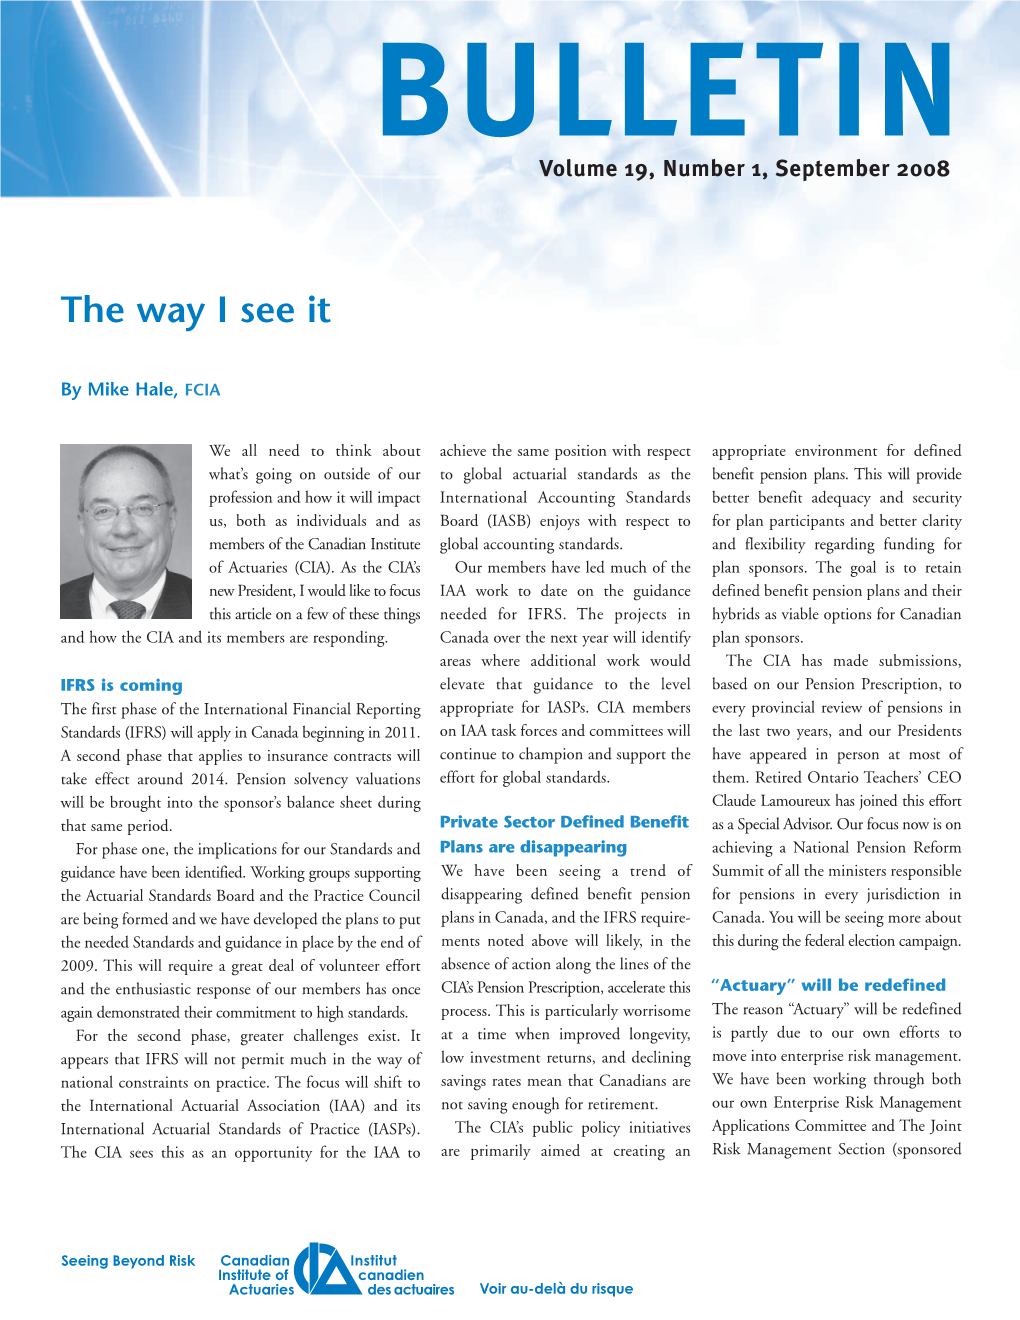 Bulletin Vol. 19, No 1, September 2008